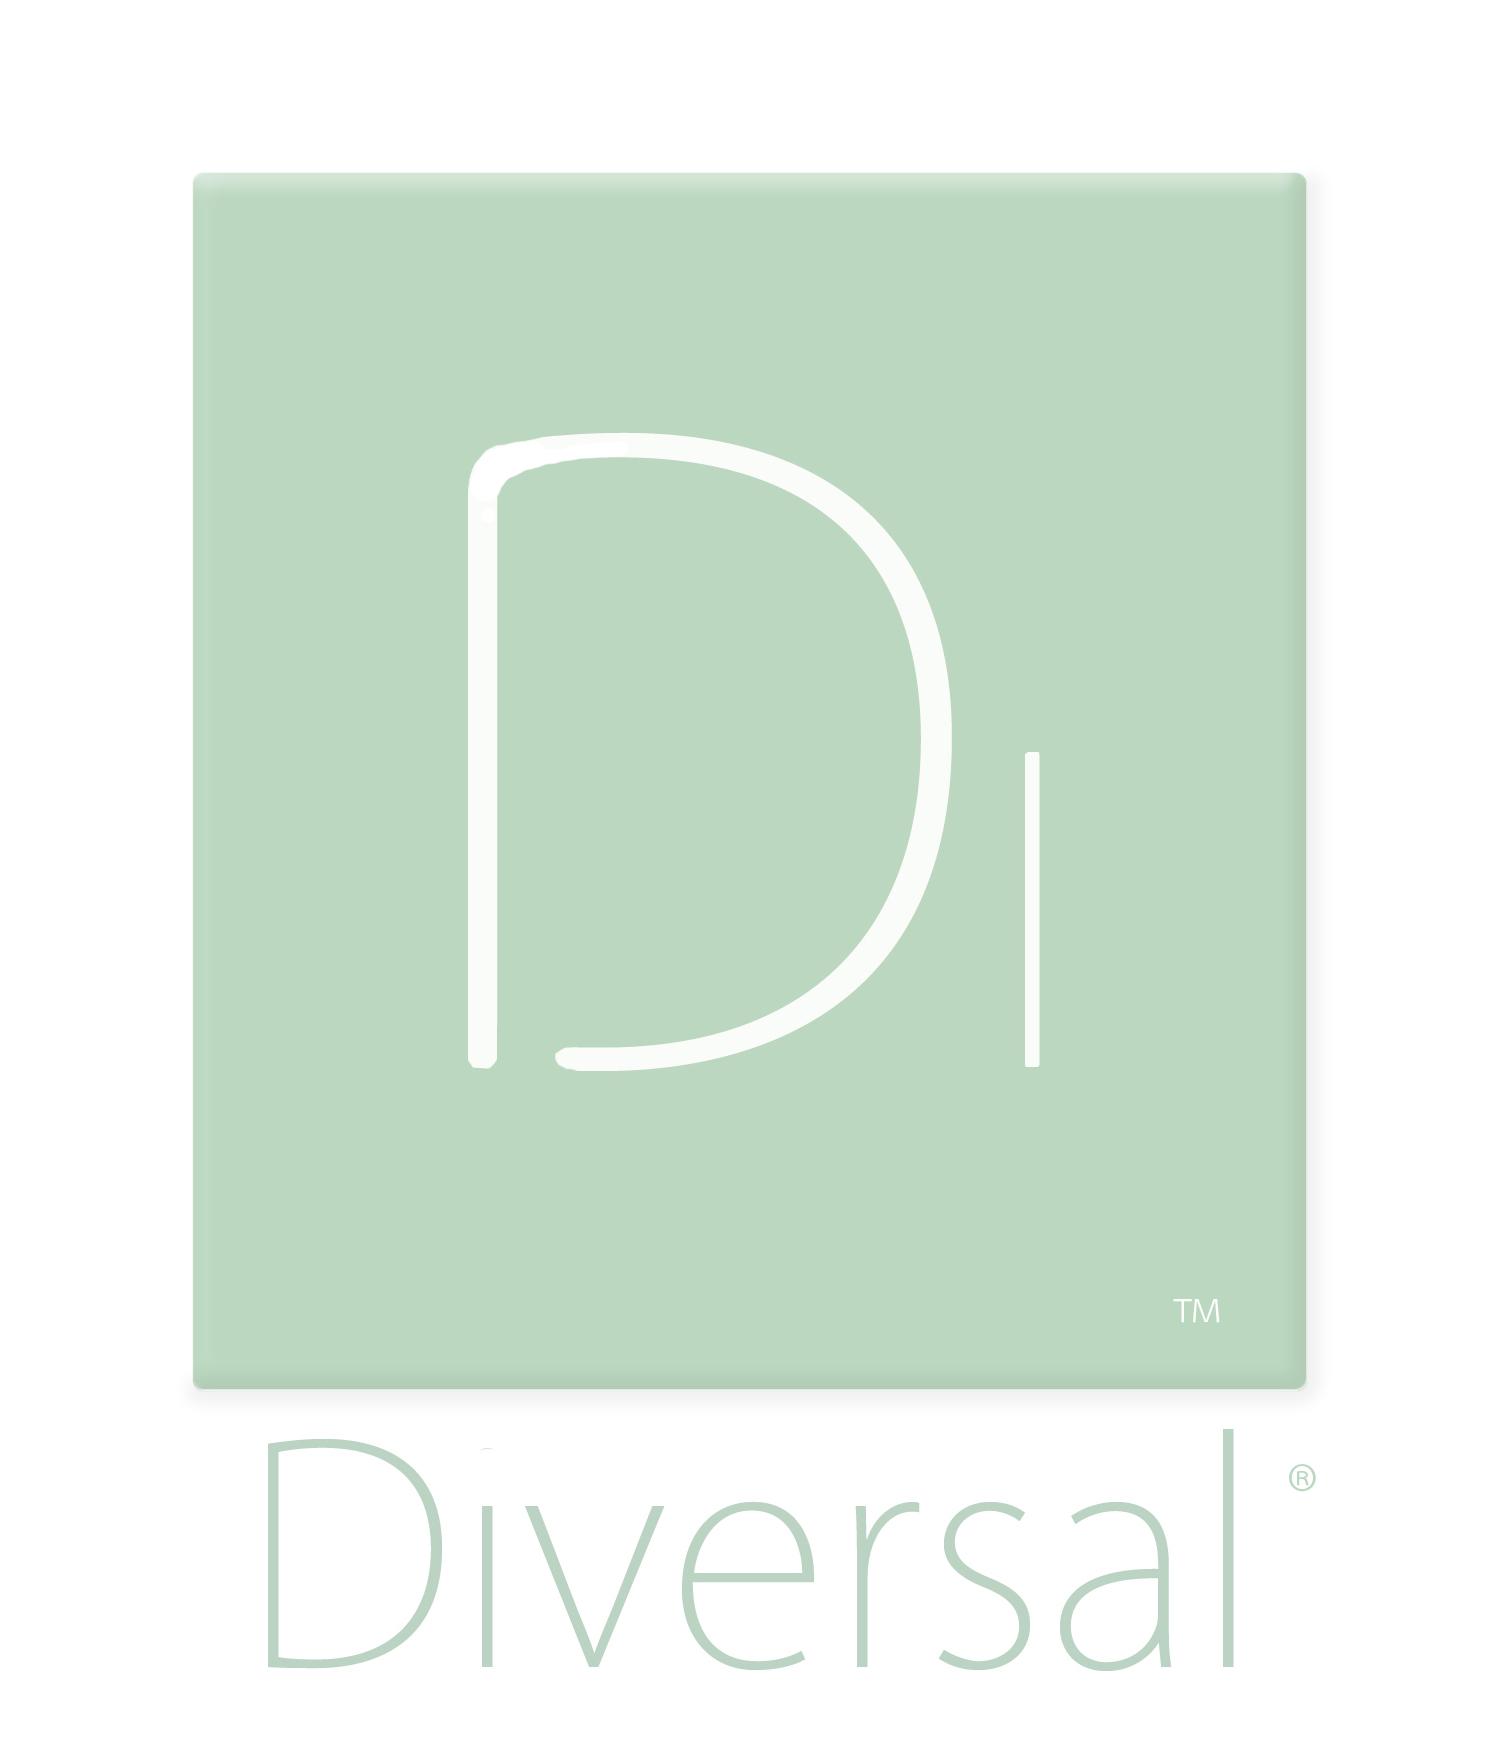 Diversal_logo_11.jpg